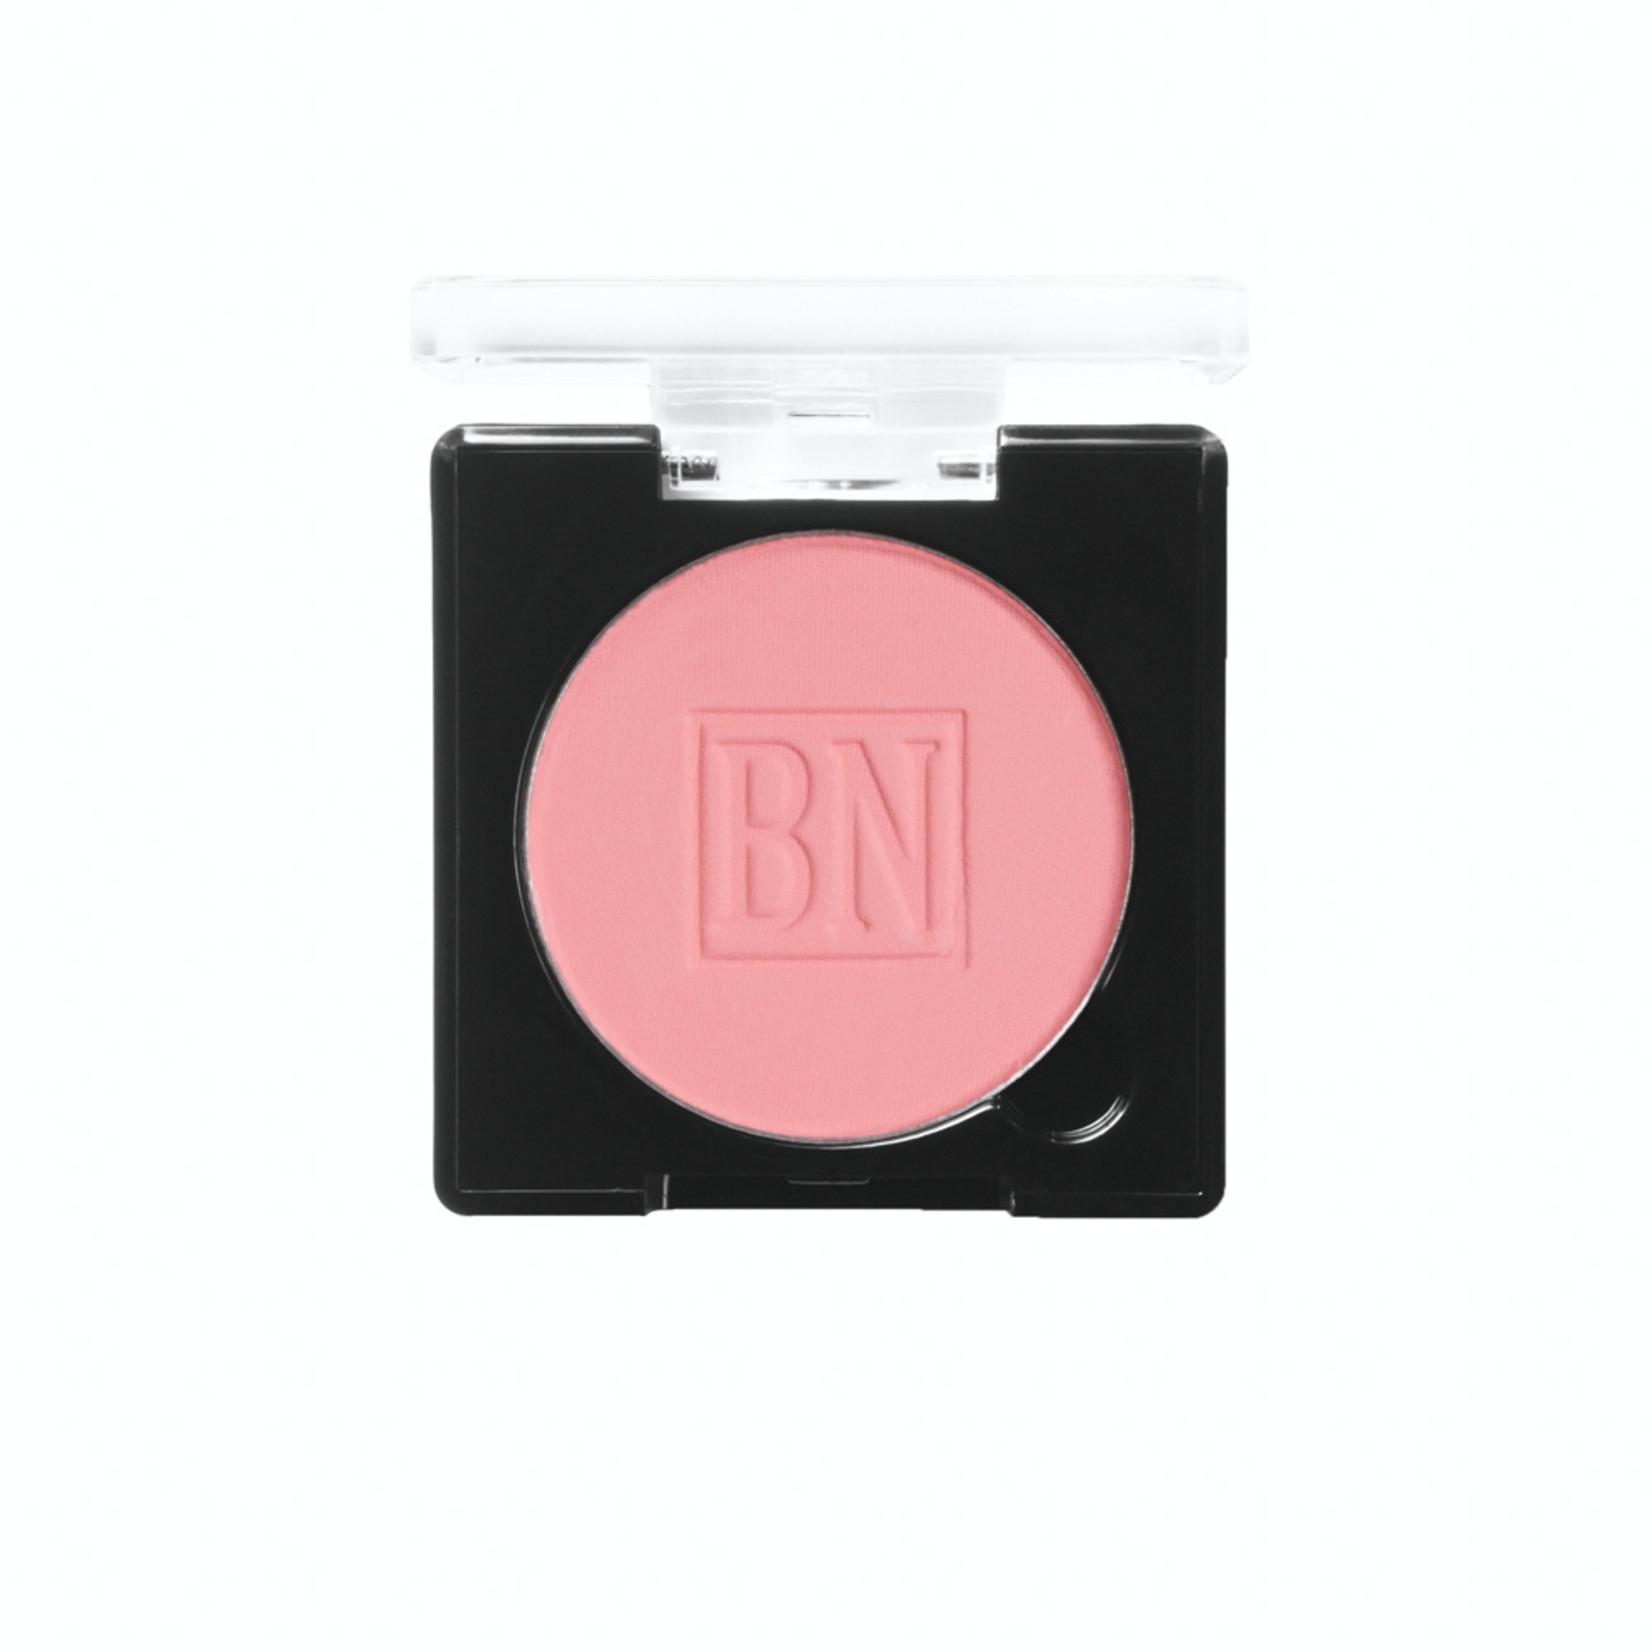 Ben Nye Powder Blush - Roses & Pinks